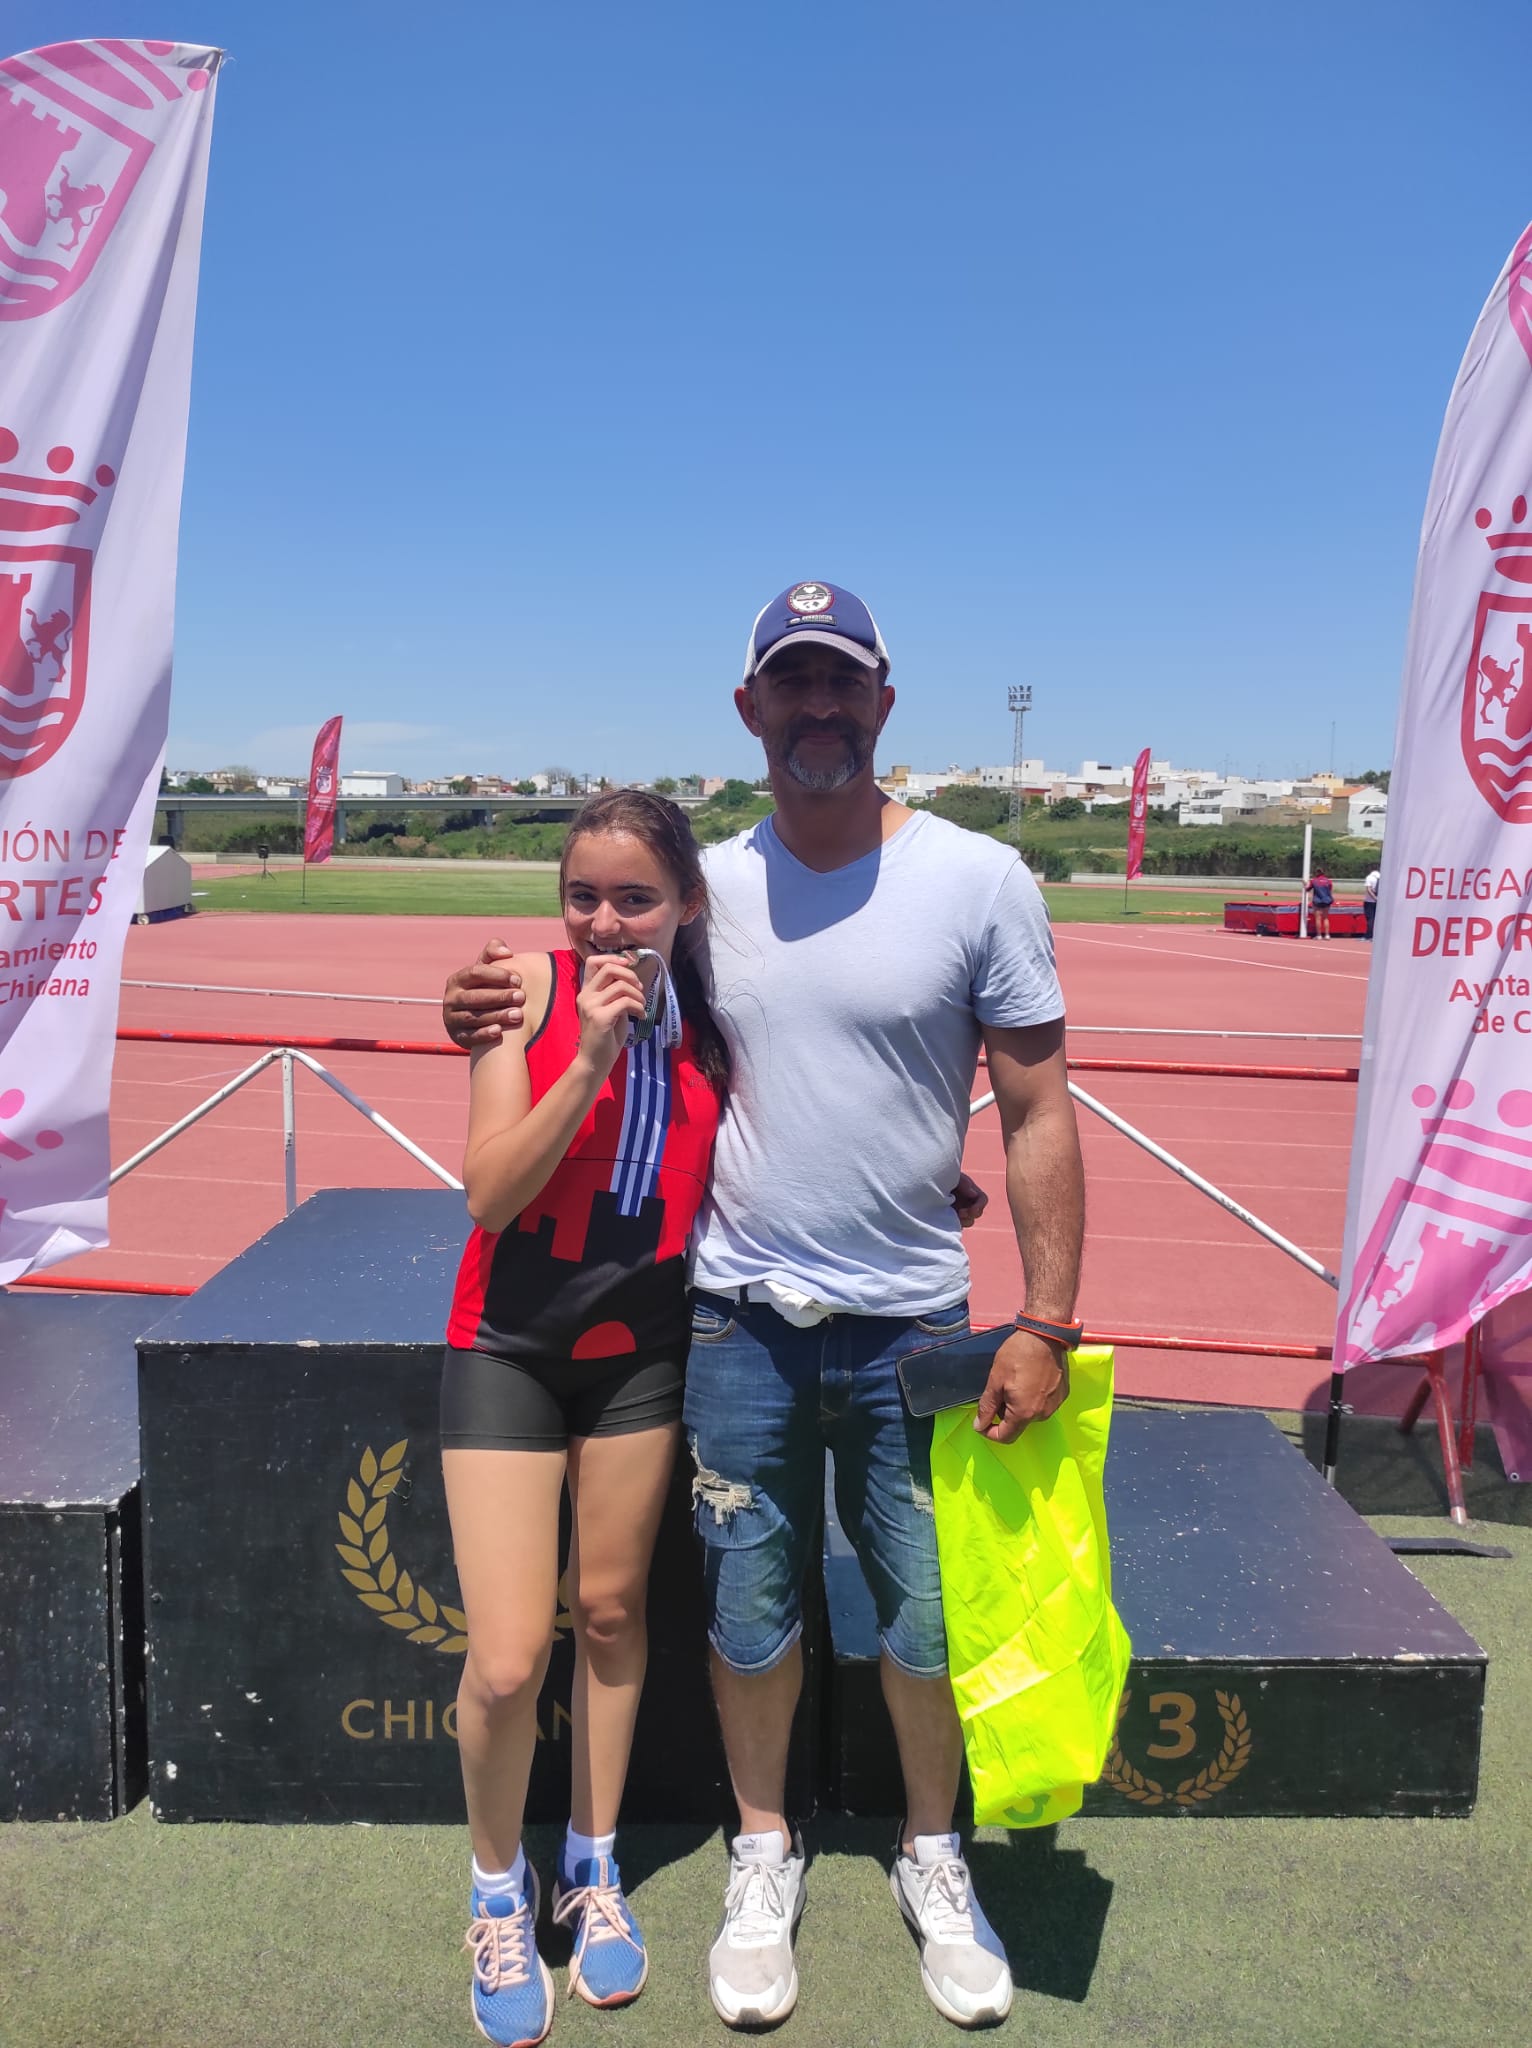 Oro para Sara Pedrero y Laura Martínez; y plata Basma Labhabi en el Campeonato de Andalucía sub 14 Occidental